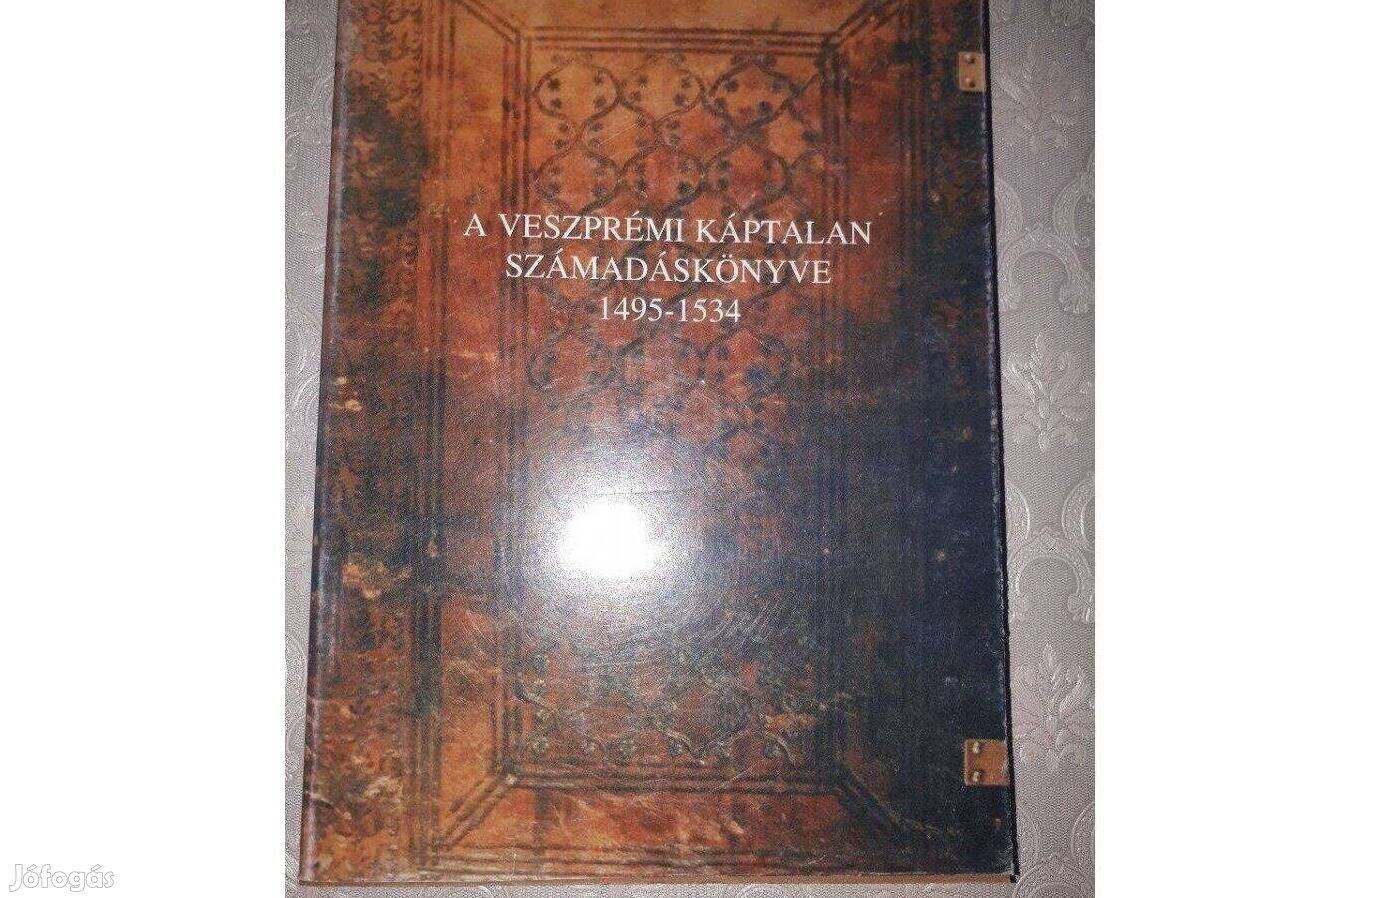 A veszprémi káptalan számadáskönyve 1495-1534 reprint